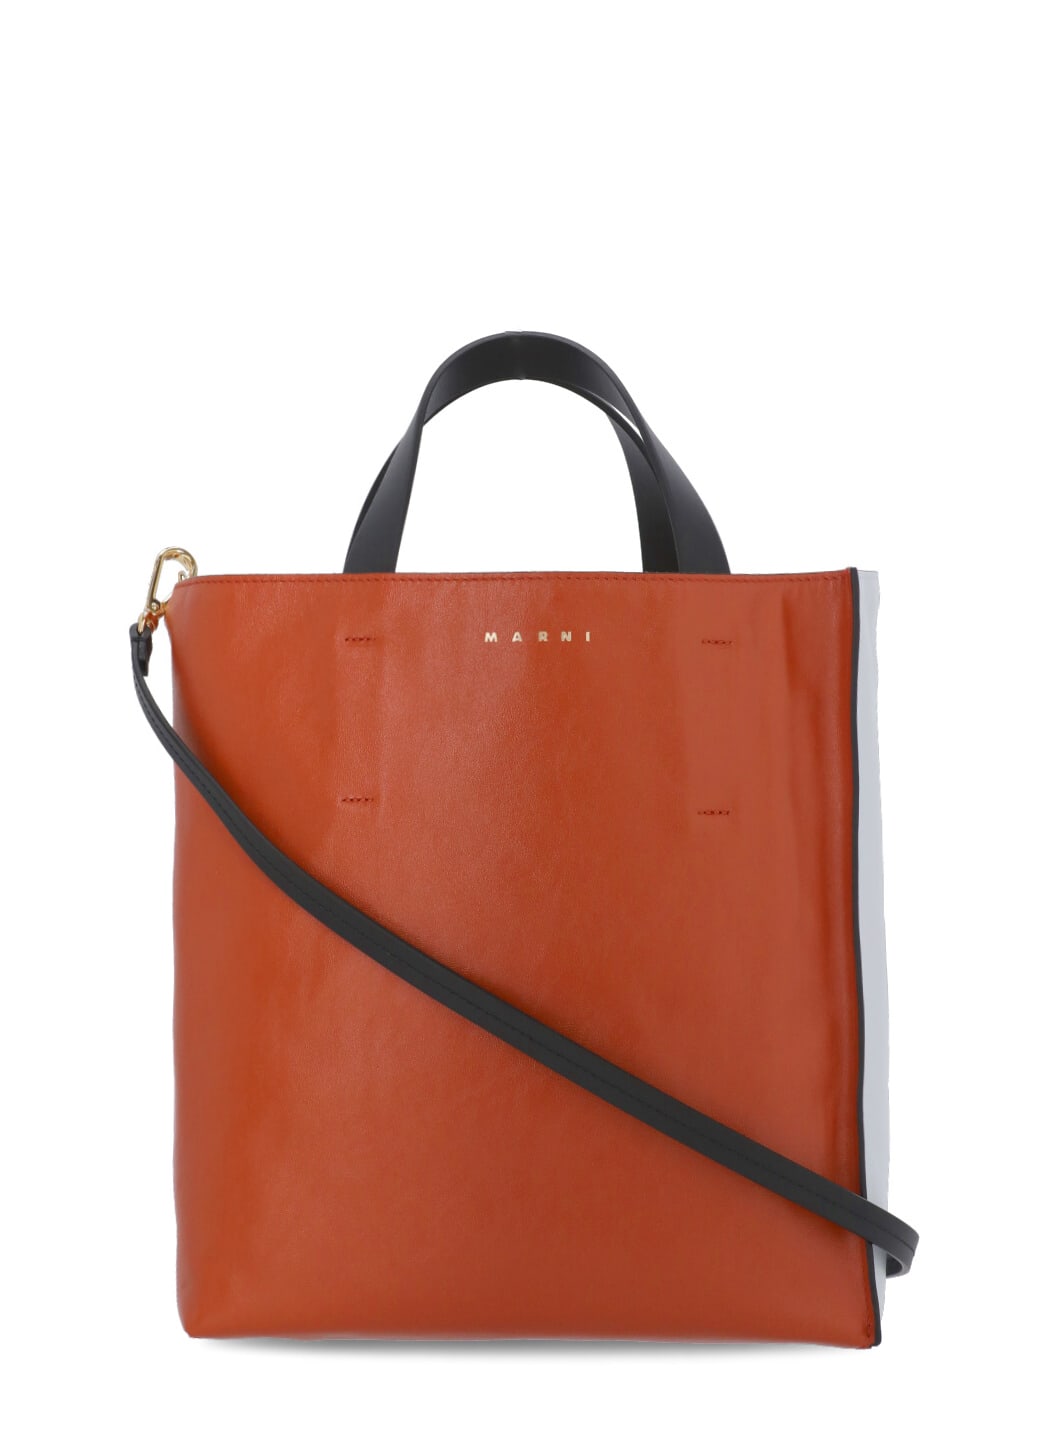 Marni Bicolor Leather Bag